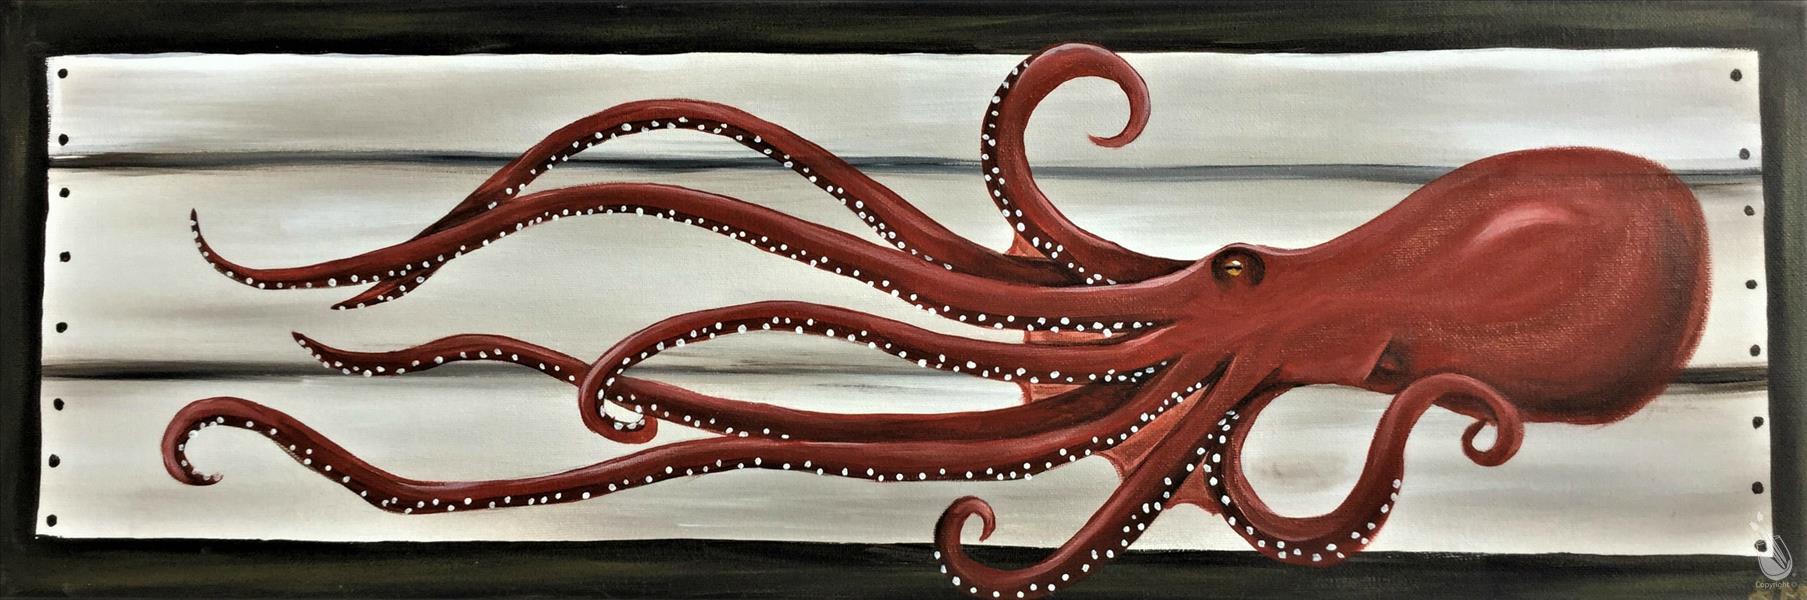 Nautical Animals - Octopus